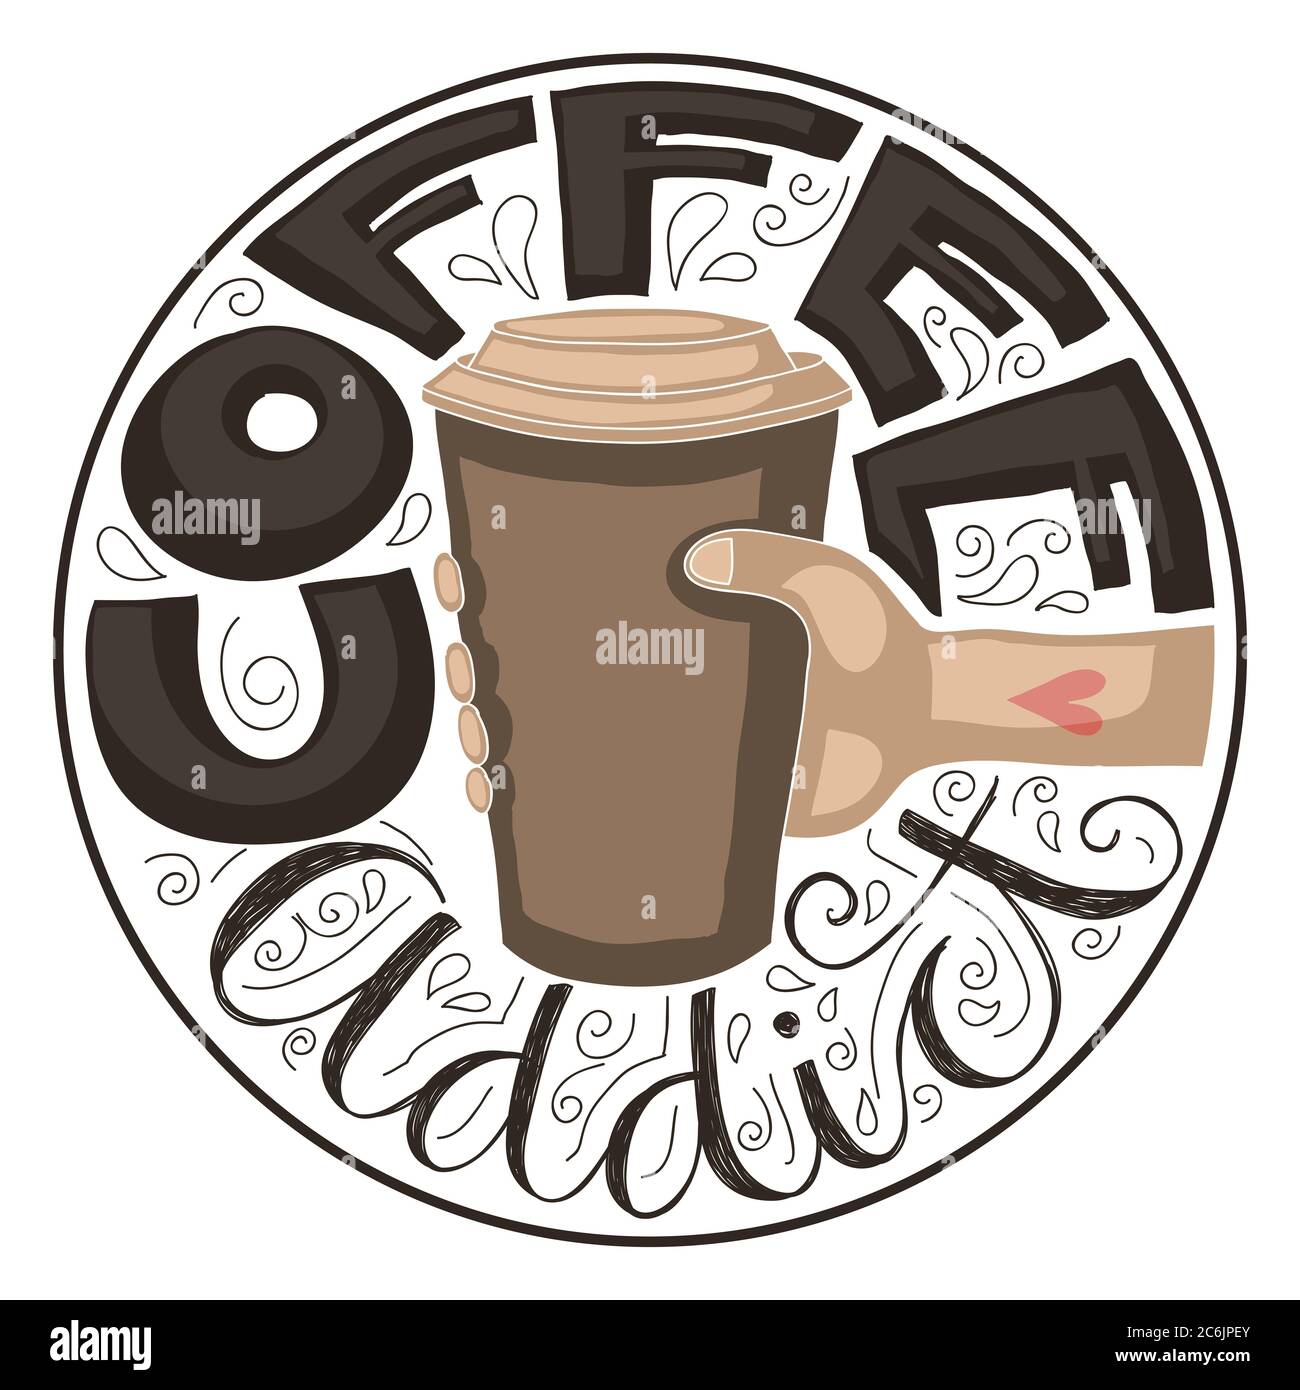 Lettrage à la main du texte « Coffee addict » autour d'une caricature d'une main tenant une tasse de café en papier. Banque D'Images